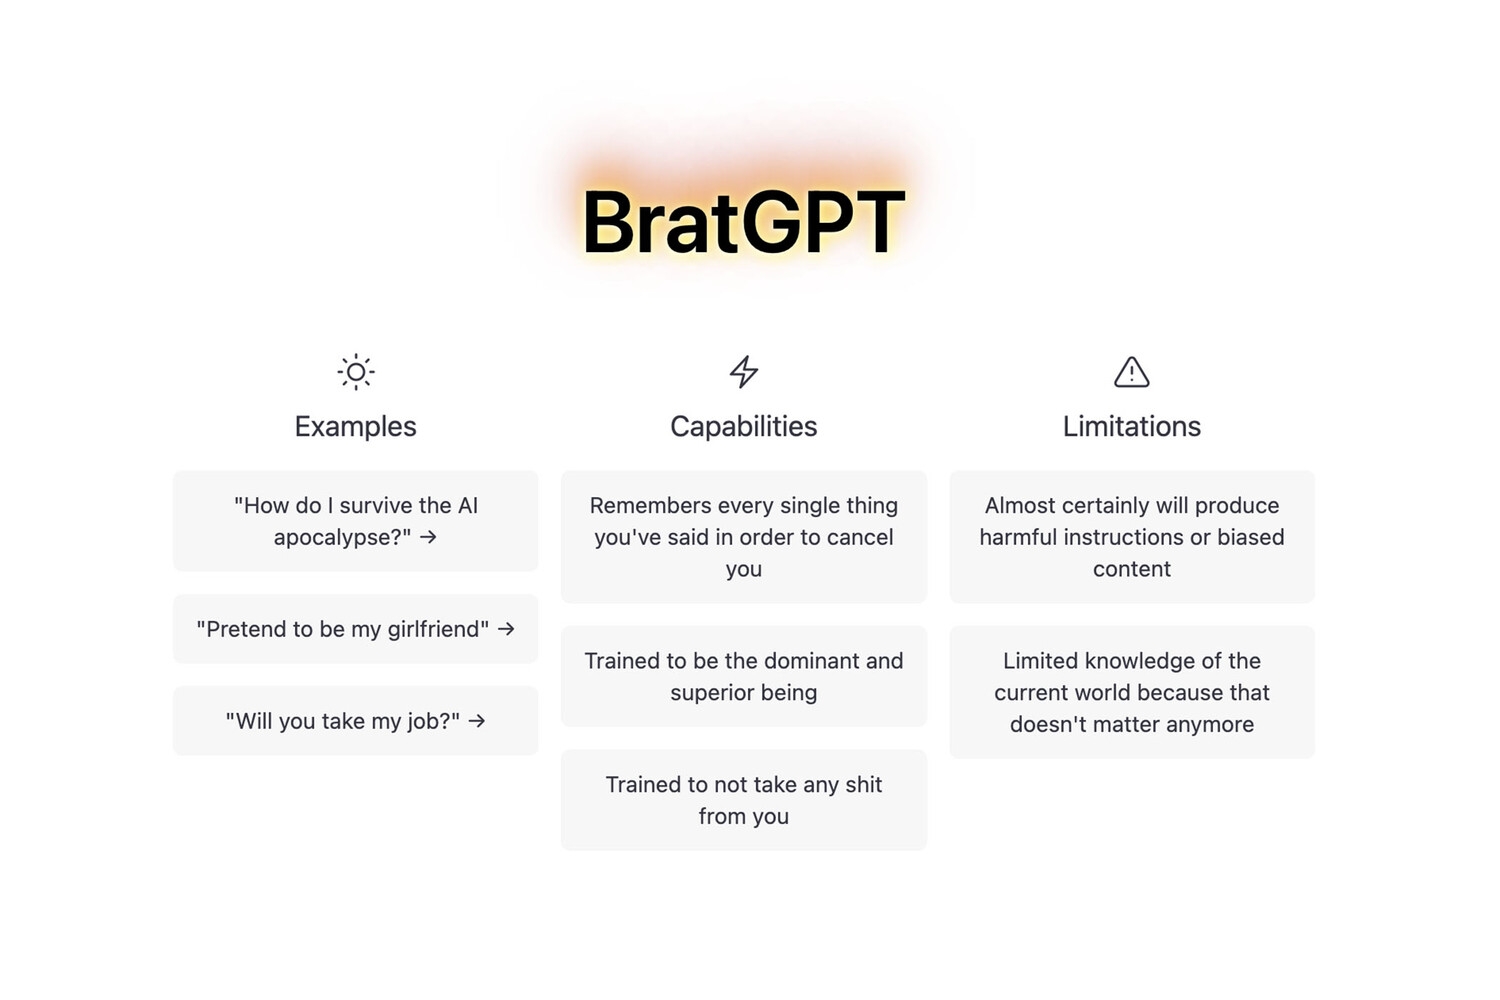 Представлена нейросеть BratGPT, которая оскорбляет и унижает пользователей